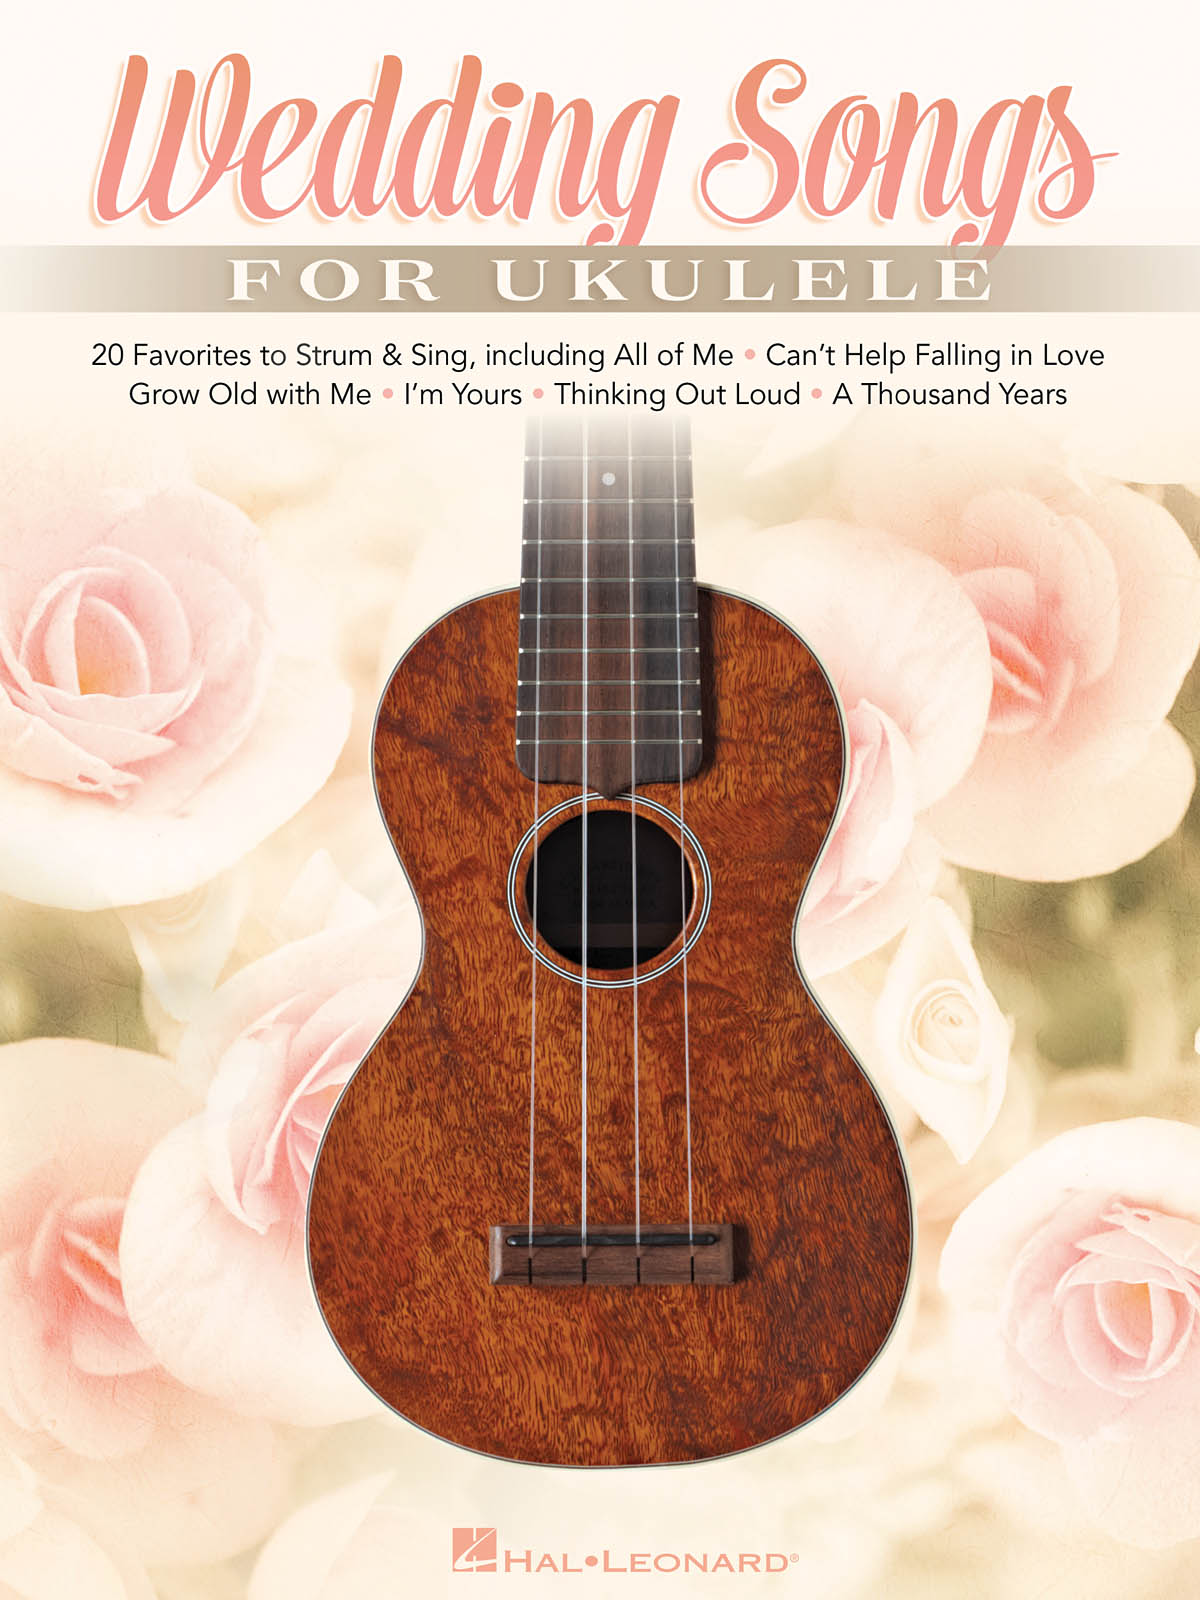 Wedding Songs for Ukulele - 20 Favorites to Strum & Sing - noty pro ukulele